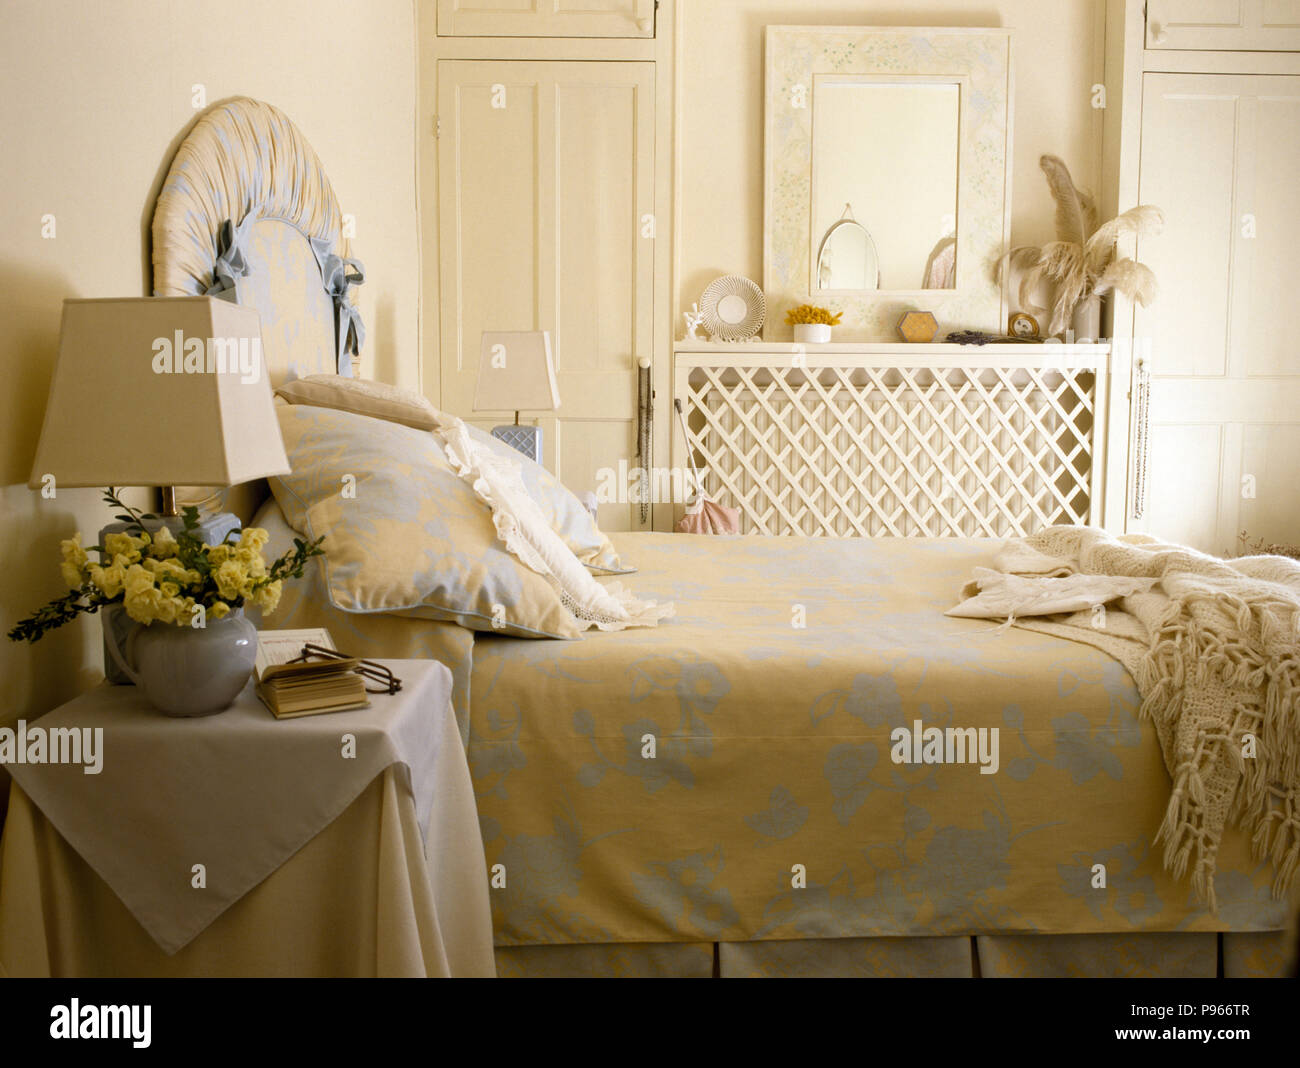 Le linge de lit à motifs floraux sur les 80 chambres Banque D'Images